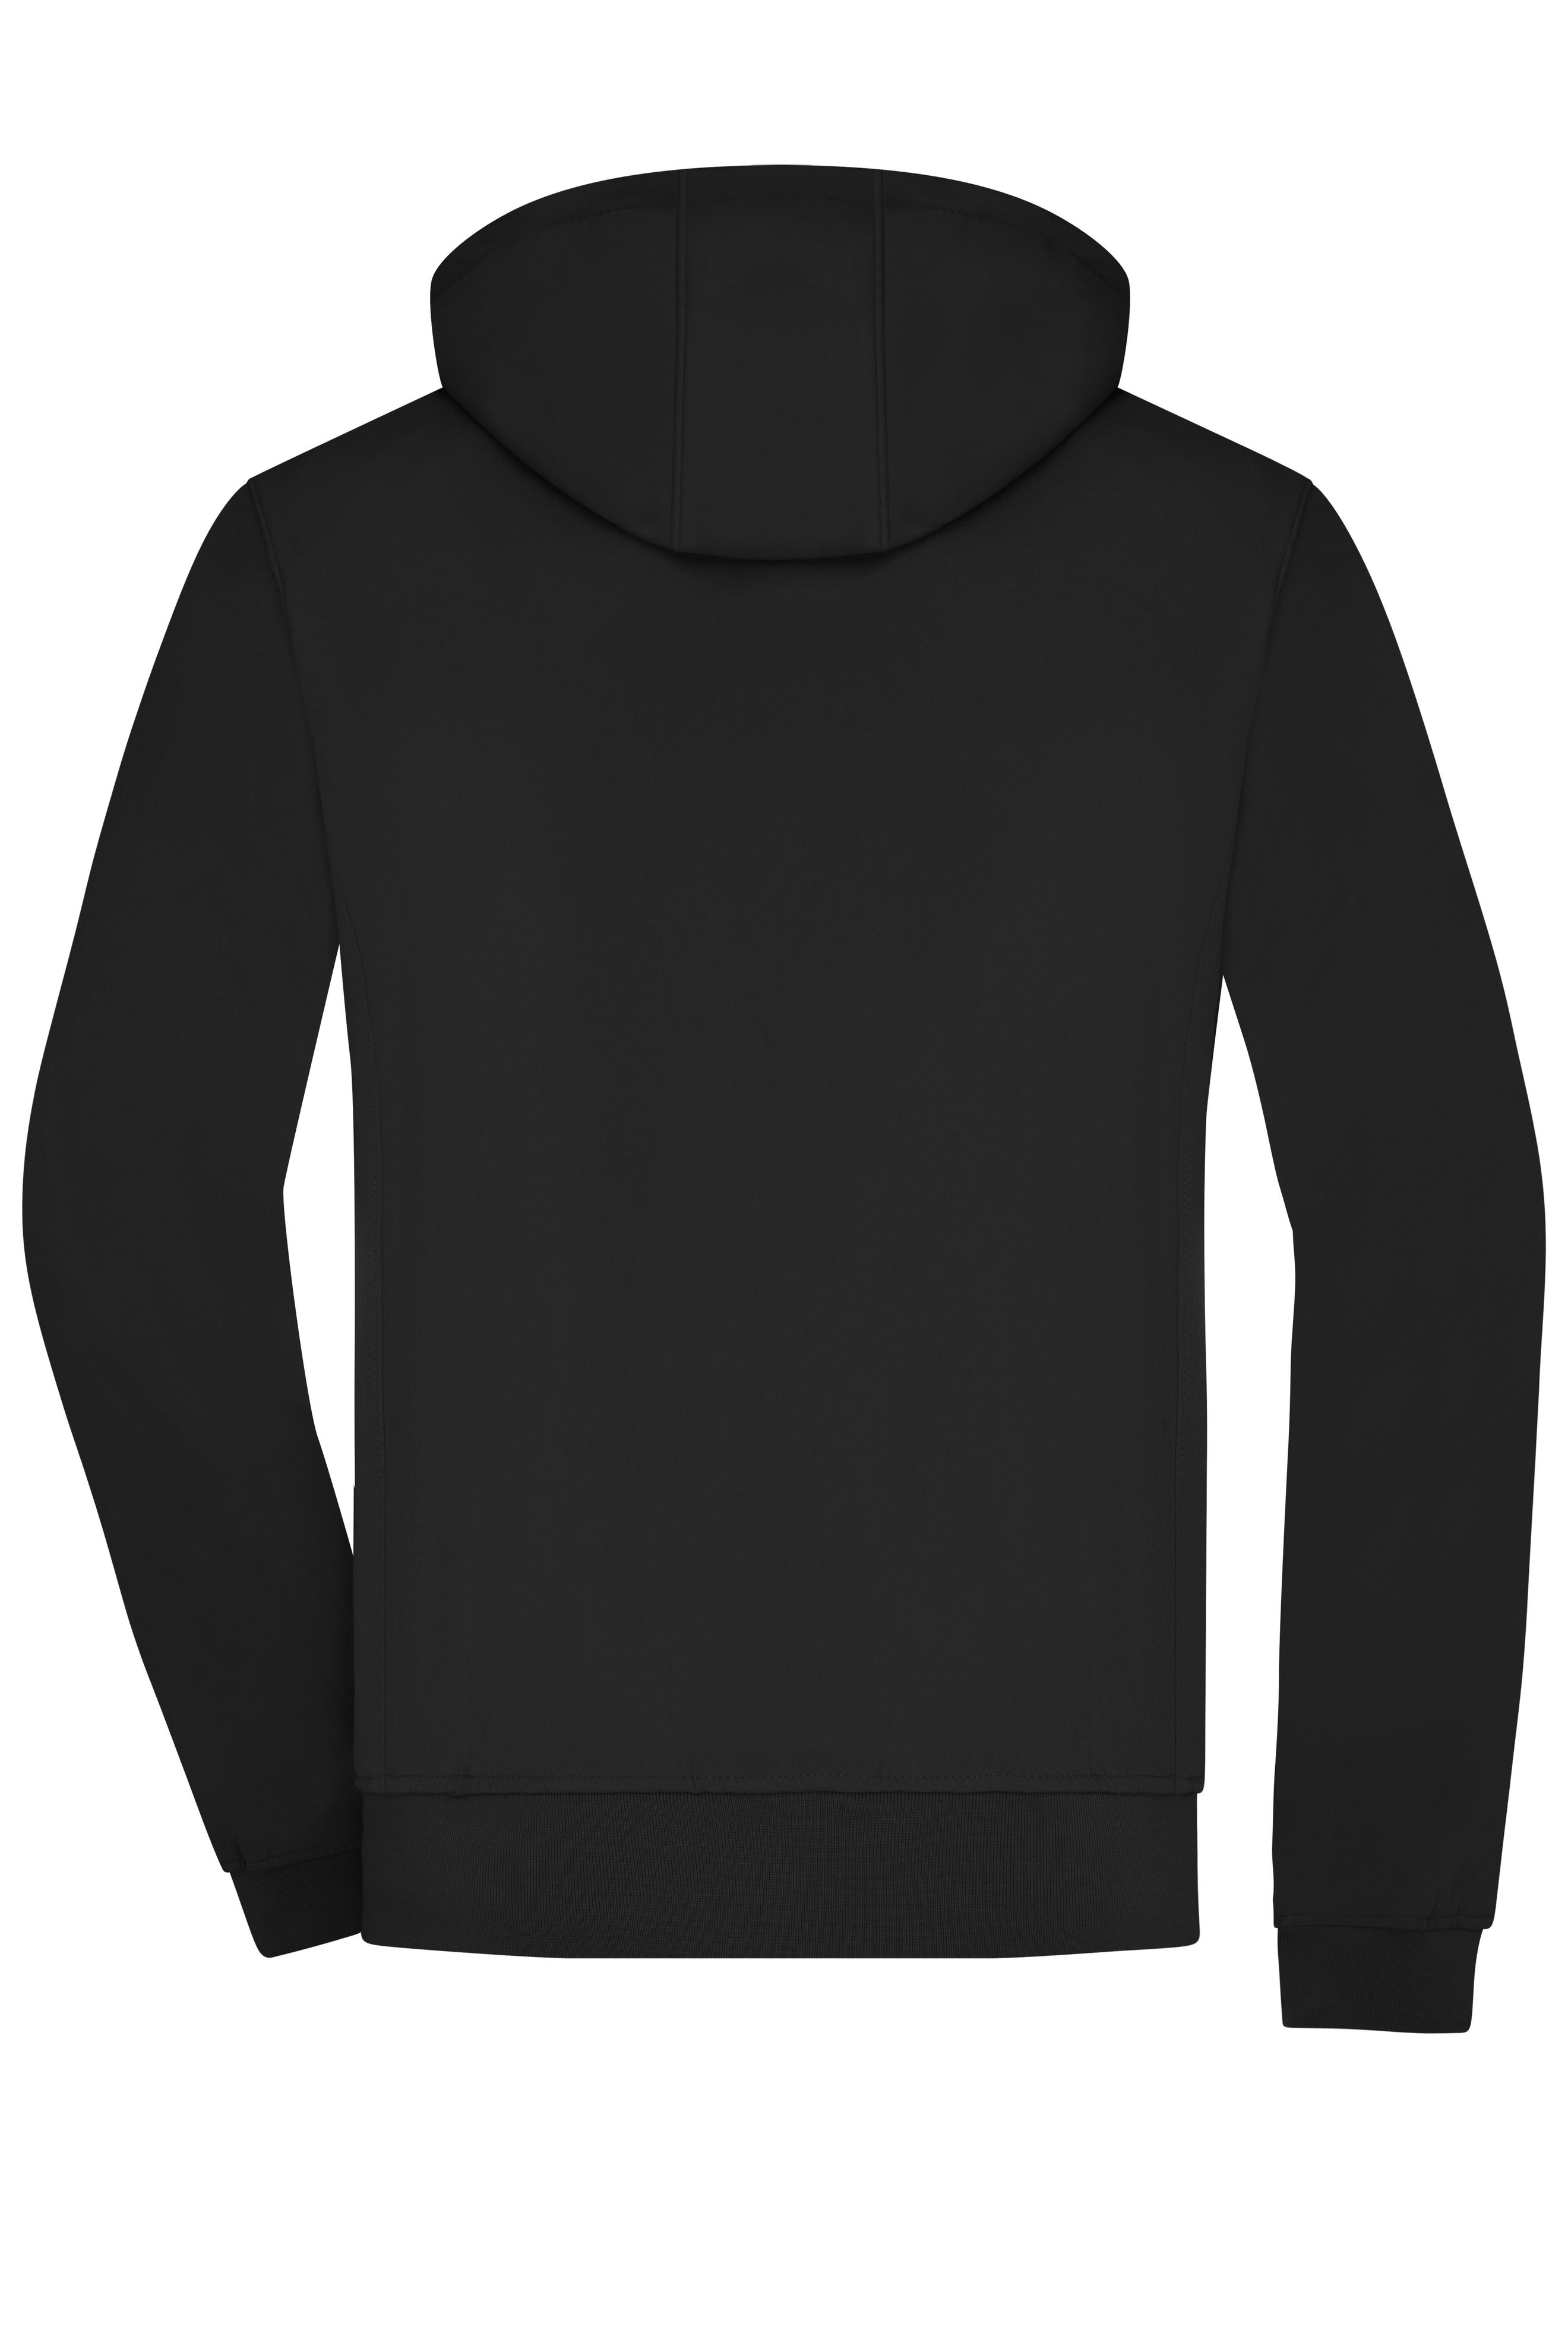 Men Men's Hooded Softshell Jacket Black/black-Promotextilien.de